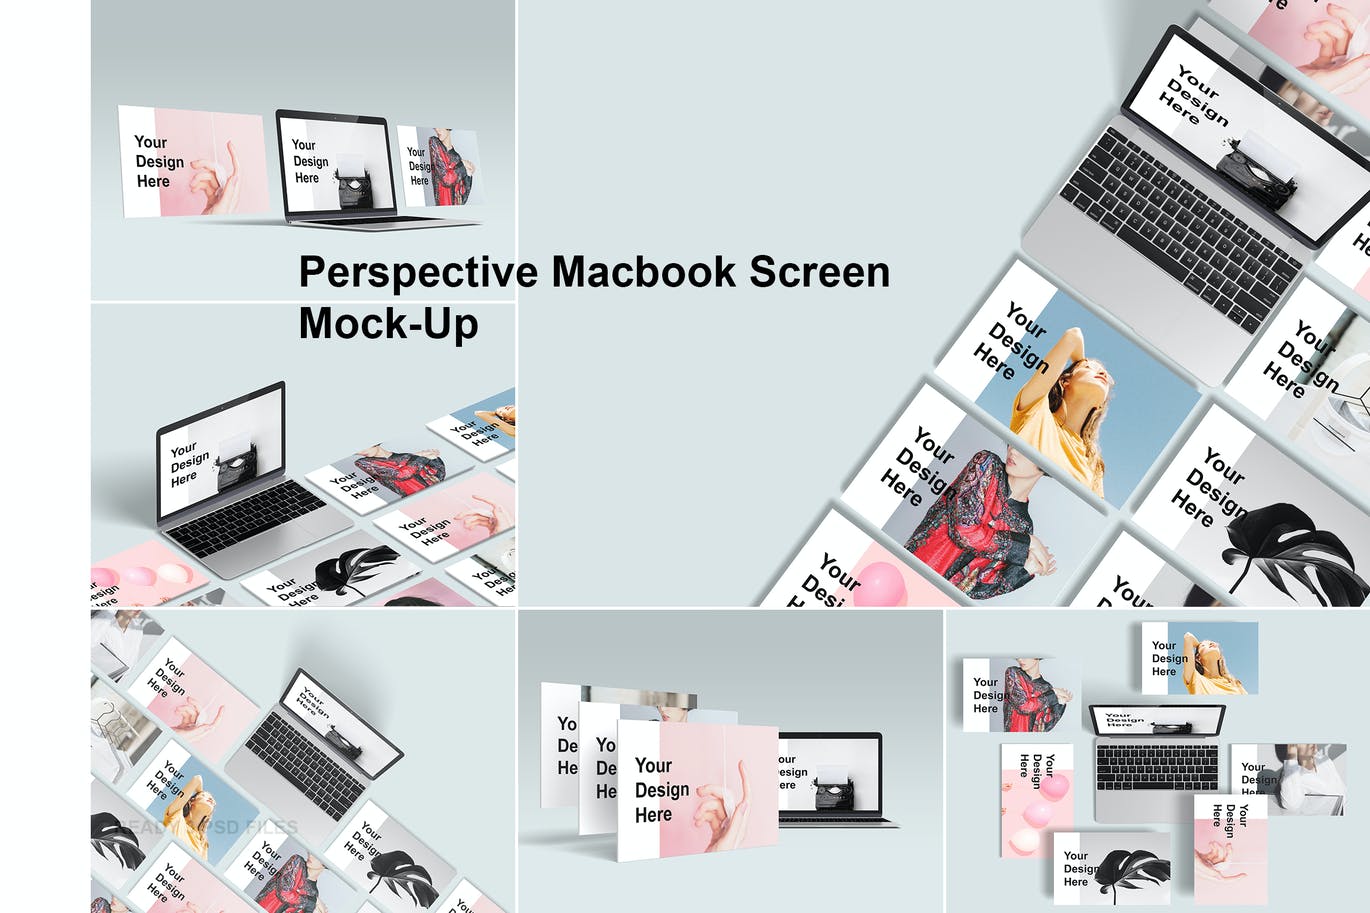 网站UI界面设计展示模板 Perspective Macbook Screen Mock-Up设计素材模板